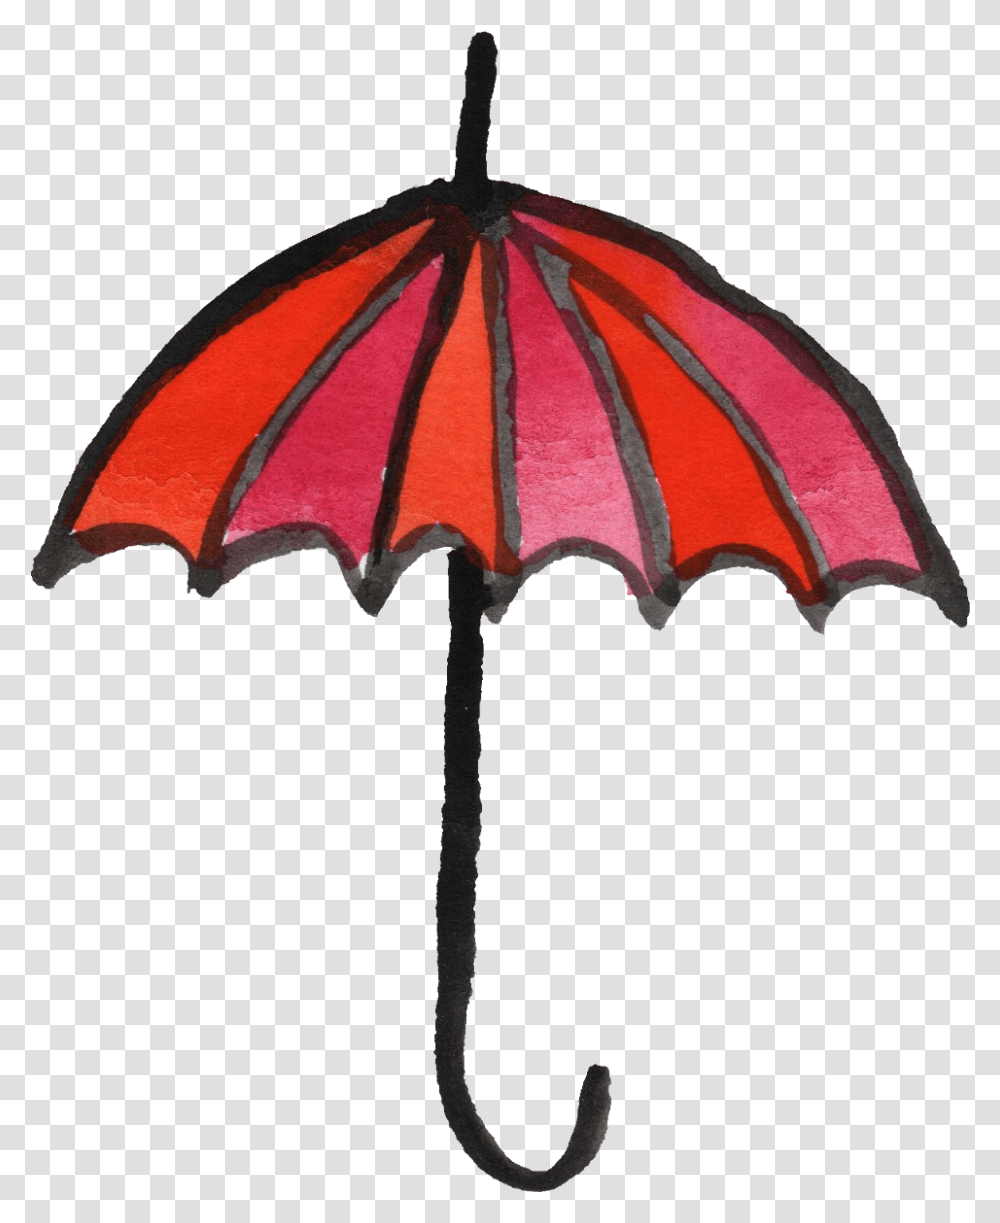 Umbrella Hd Photo Clipart Umbrella, Patio Umbrella, Garden Umbrella, Canopy, Lamp Transparent Png